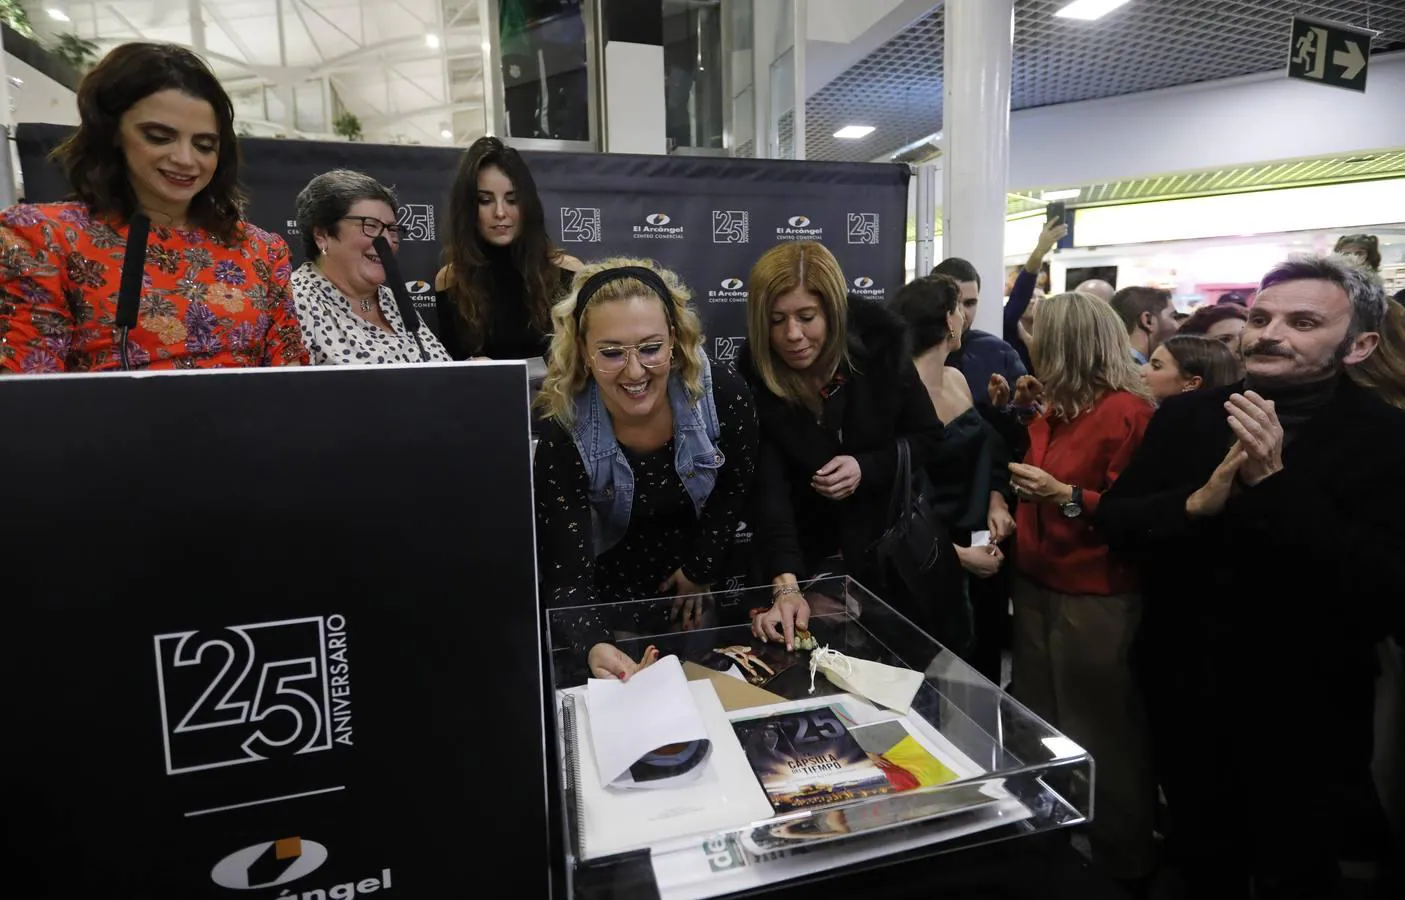 El 25 aniversario del centro comercial El Arcángel de Córdoba, en imágenes